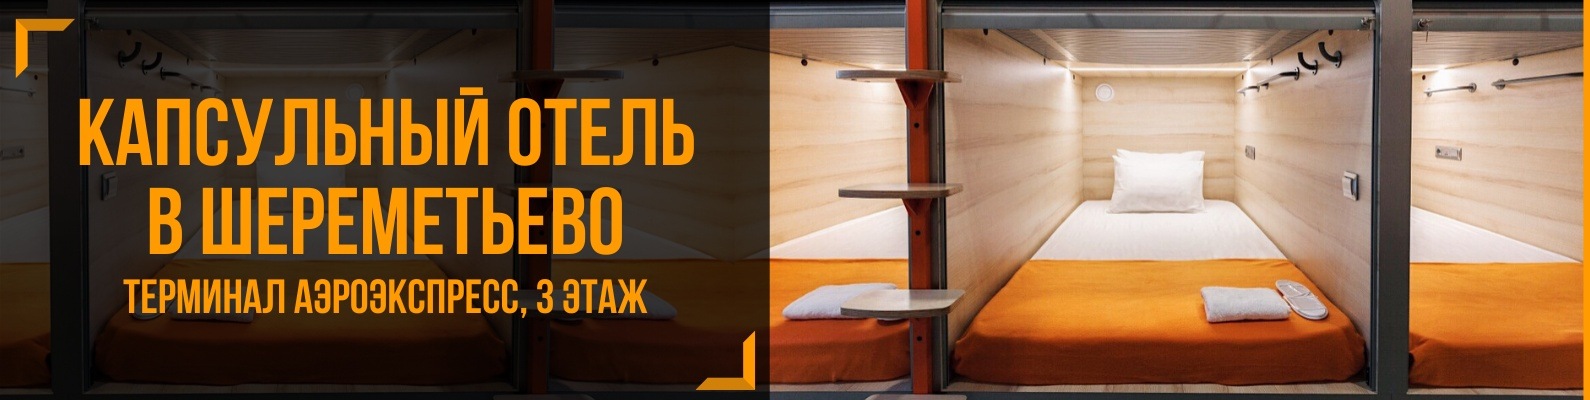 Топ-31 гостиниц и хостелов в аэропорту шереметьево